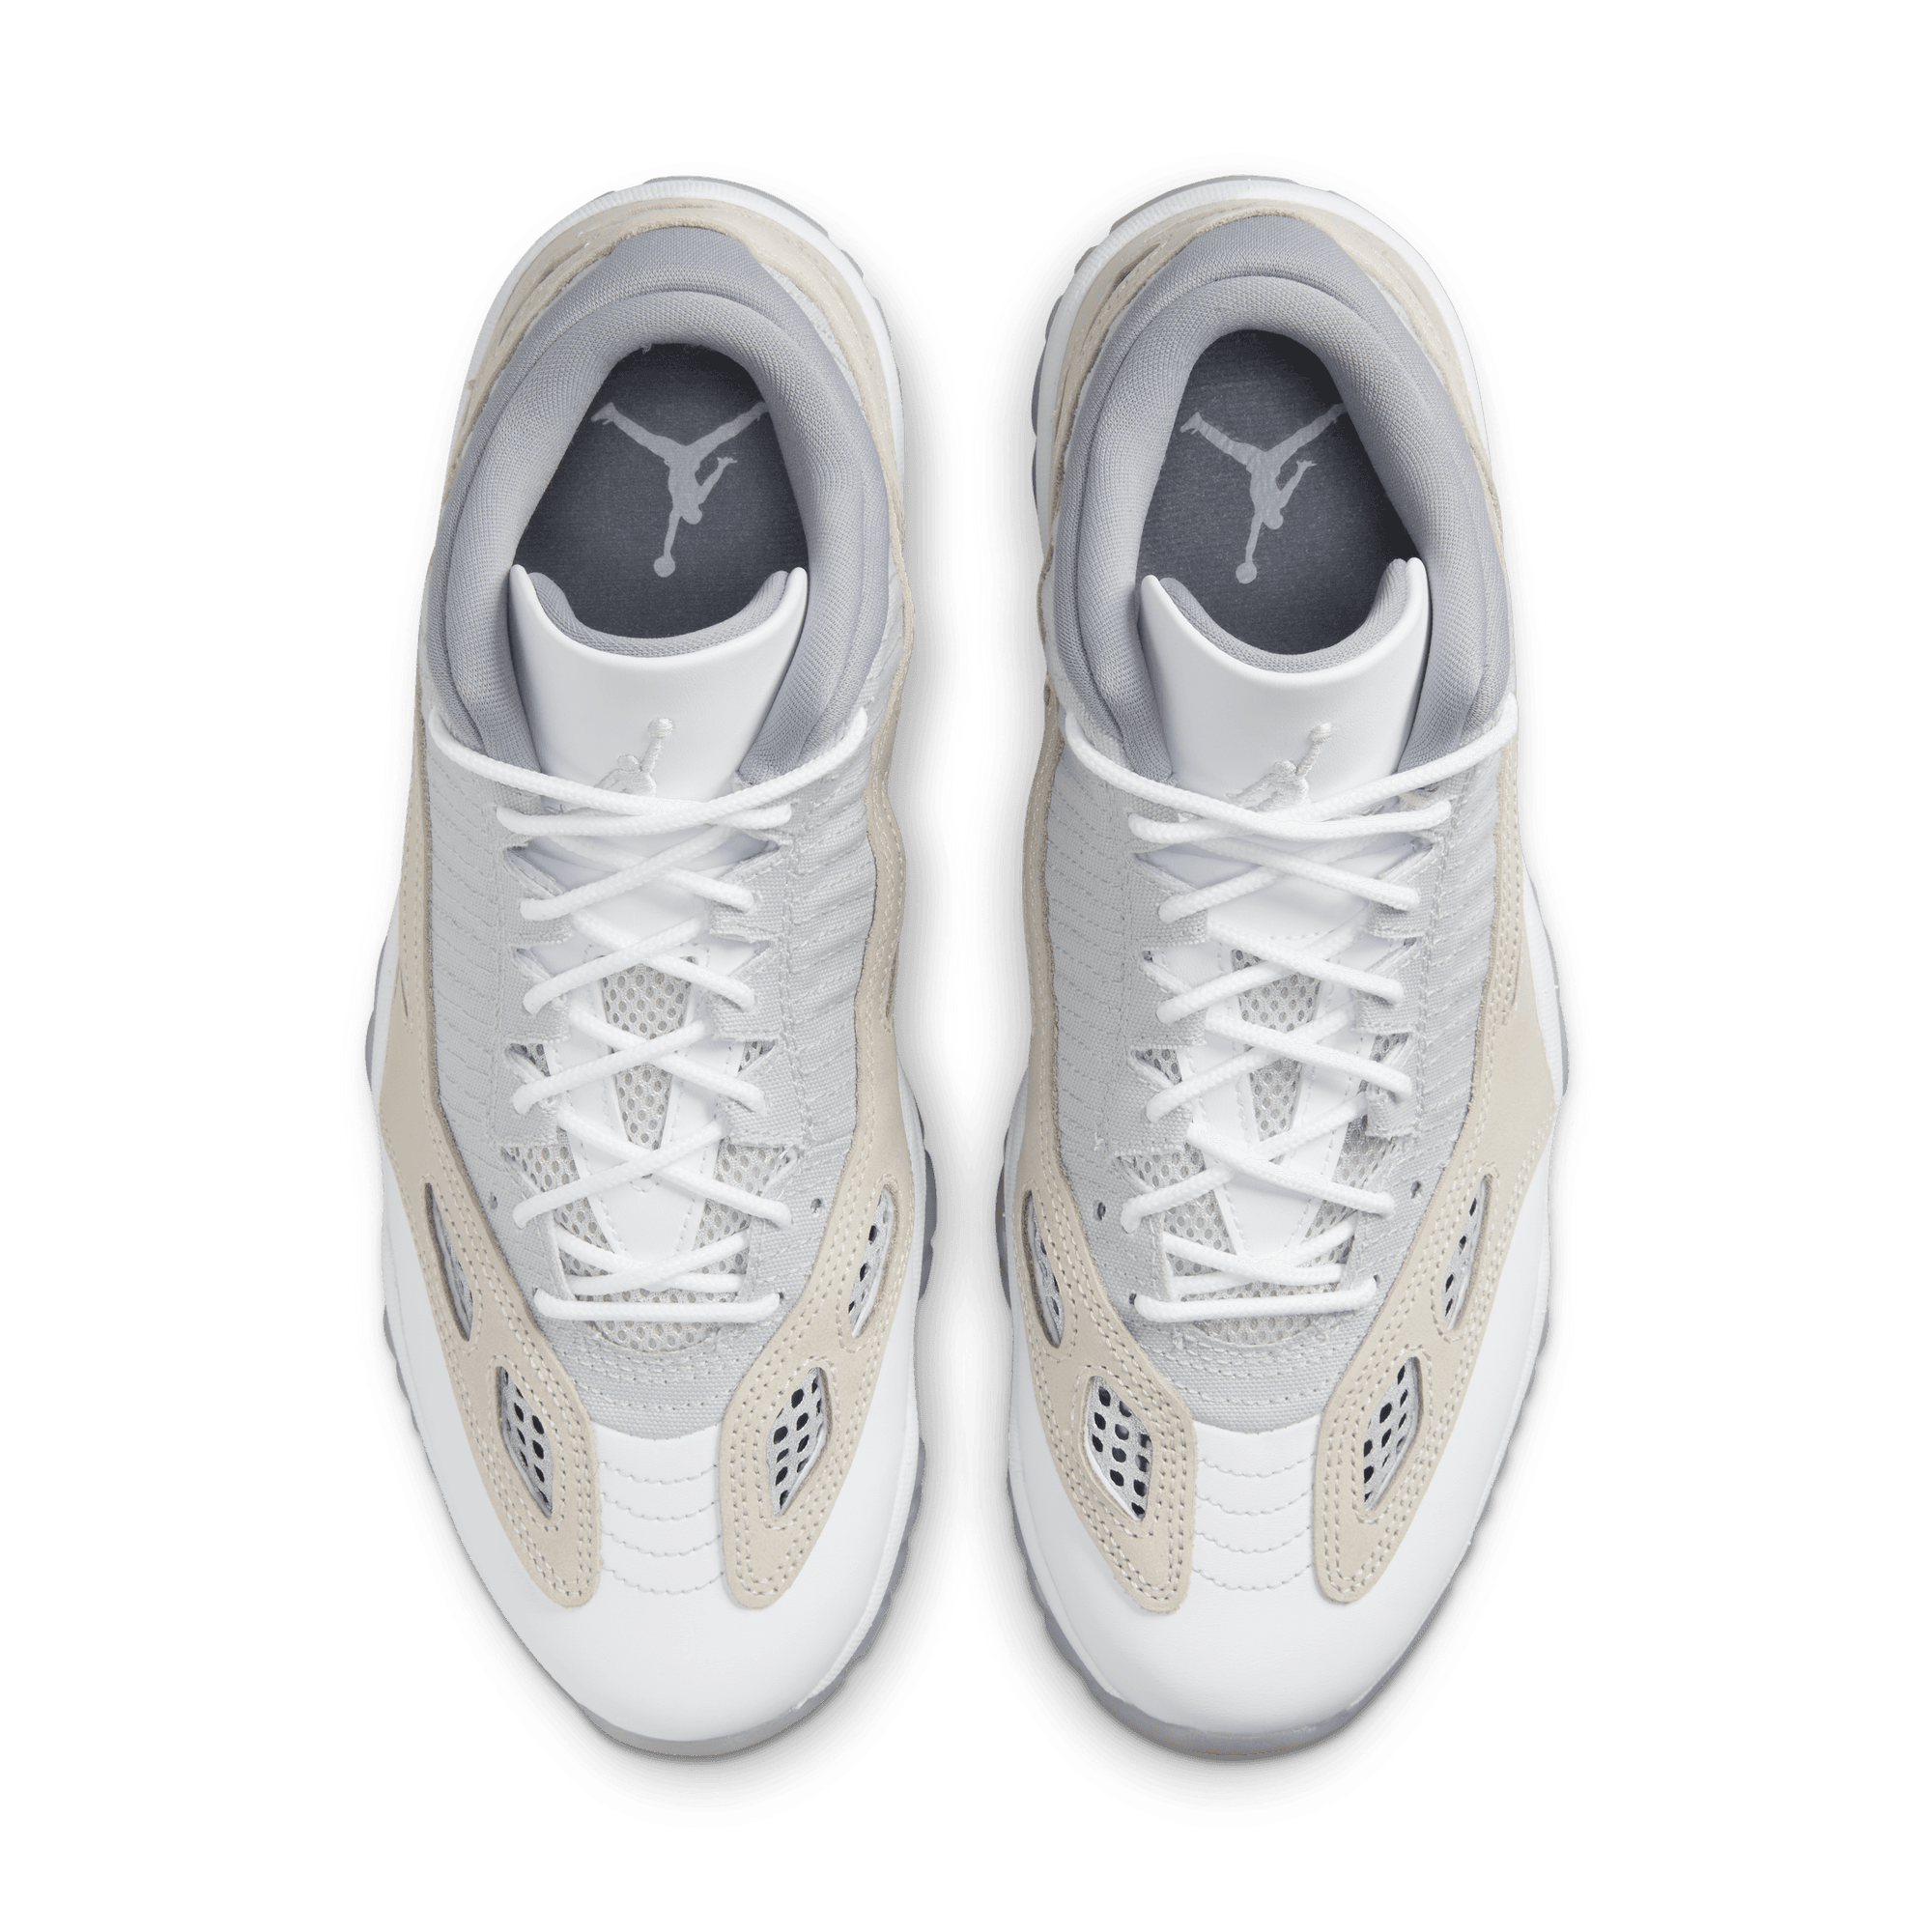 Air Jordan 11 Retro Low Men's Shoes